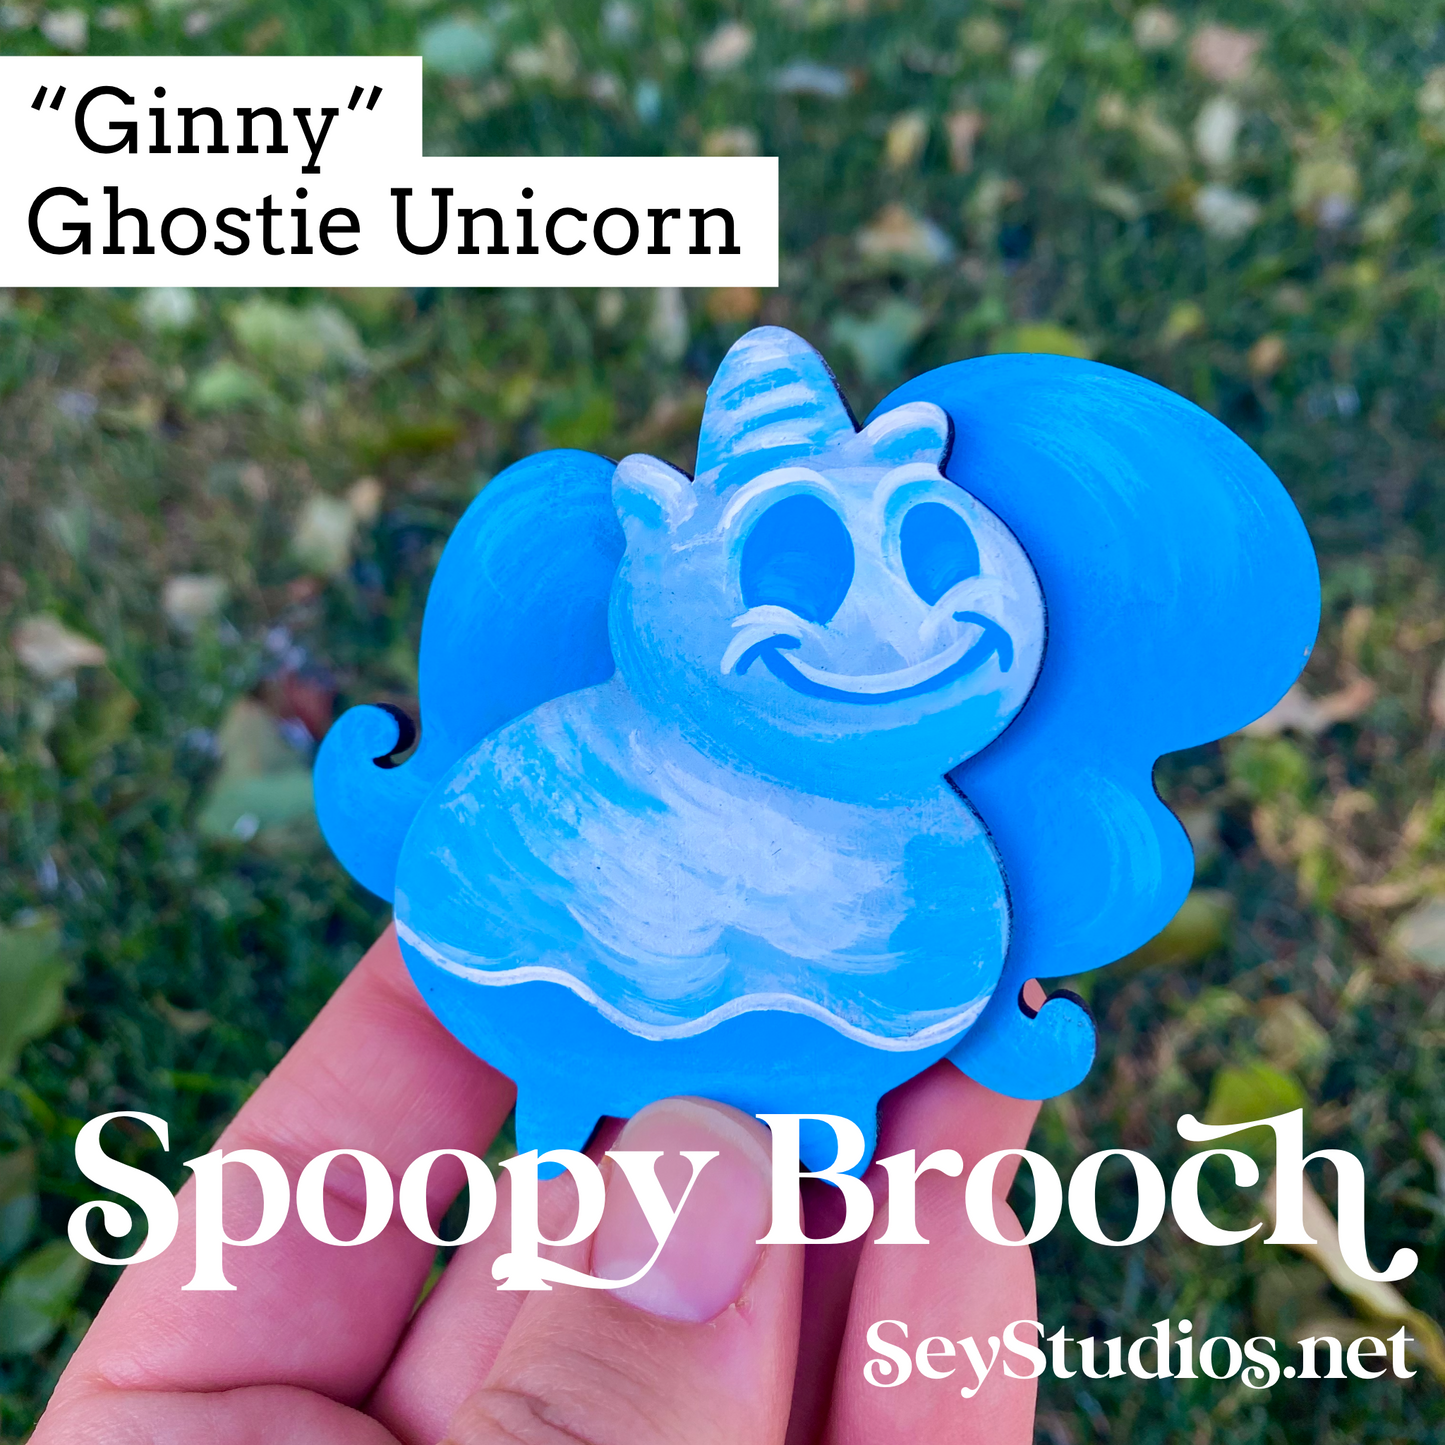 Original - “Ginny, Ghost Unicorn” Spoopy Brooch